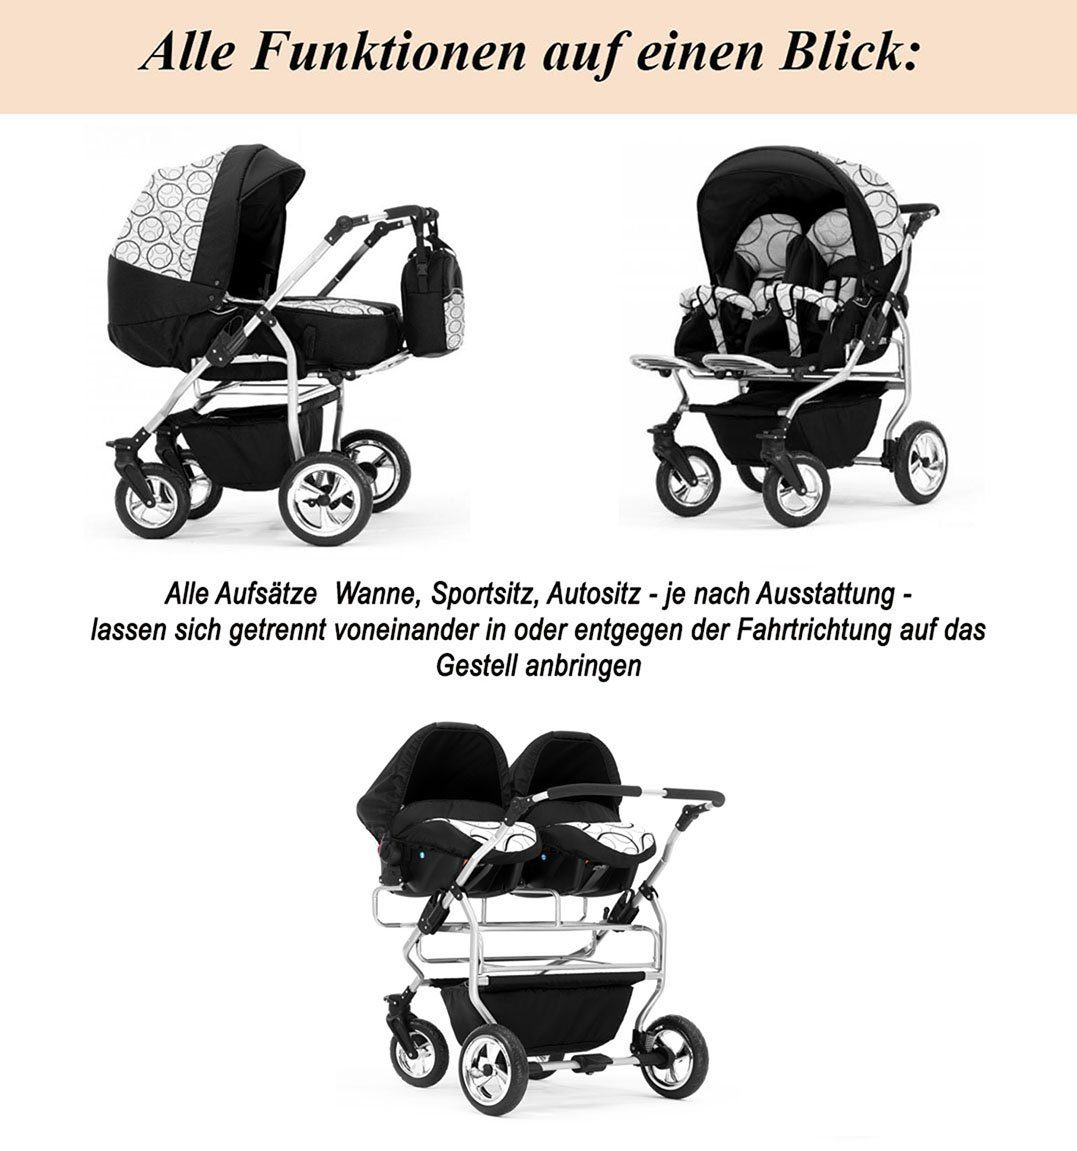 Elcar in Zwillings-Kombikinderwagen Zwillingskinderwagen Grau-Grün Geburt inkl. in von 4 - bis 14 Iso 20 Autositze Duo Teile Jahre und Farben - 1 Bases 4